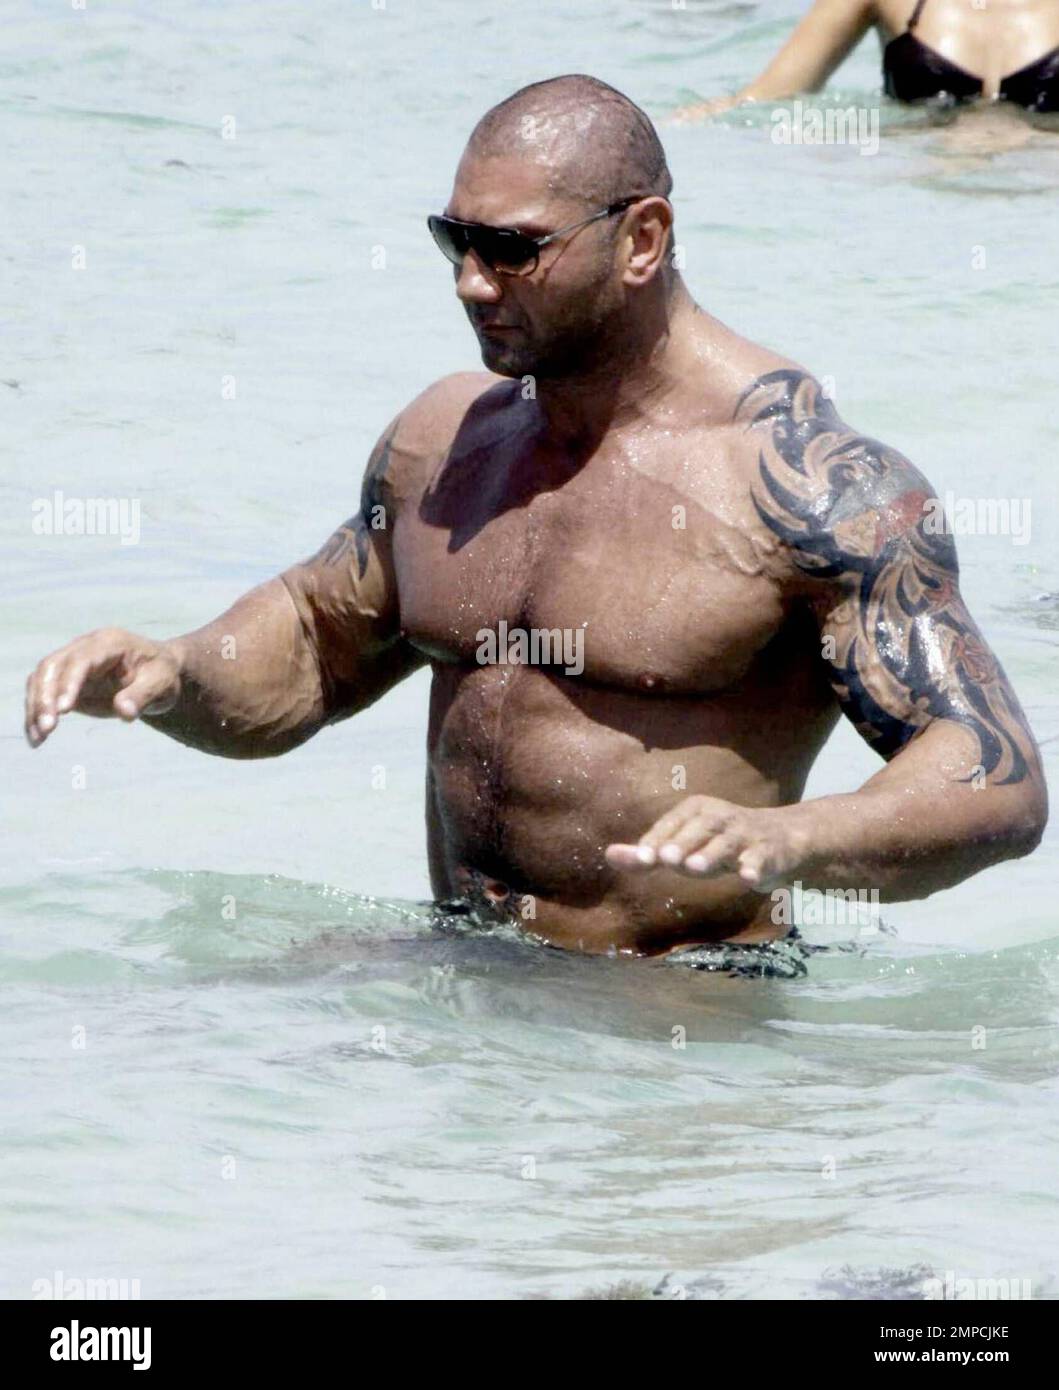 EXCLUSIVO! El luchador profesional de la WWE y cuatro veces campeón mundial  de peso pesado Batista (también conocido como David Bautista, Jr) aprovecha  el tiempo de recuperación de la cirugía para disfrutar